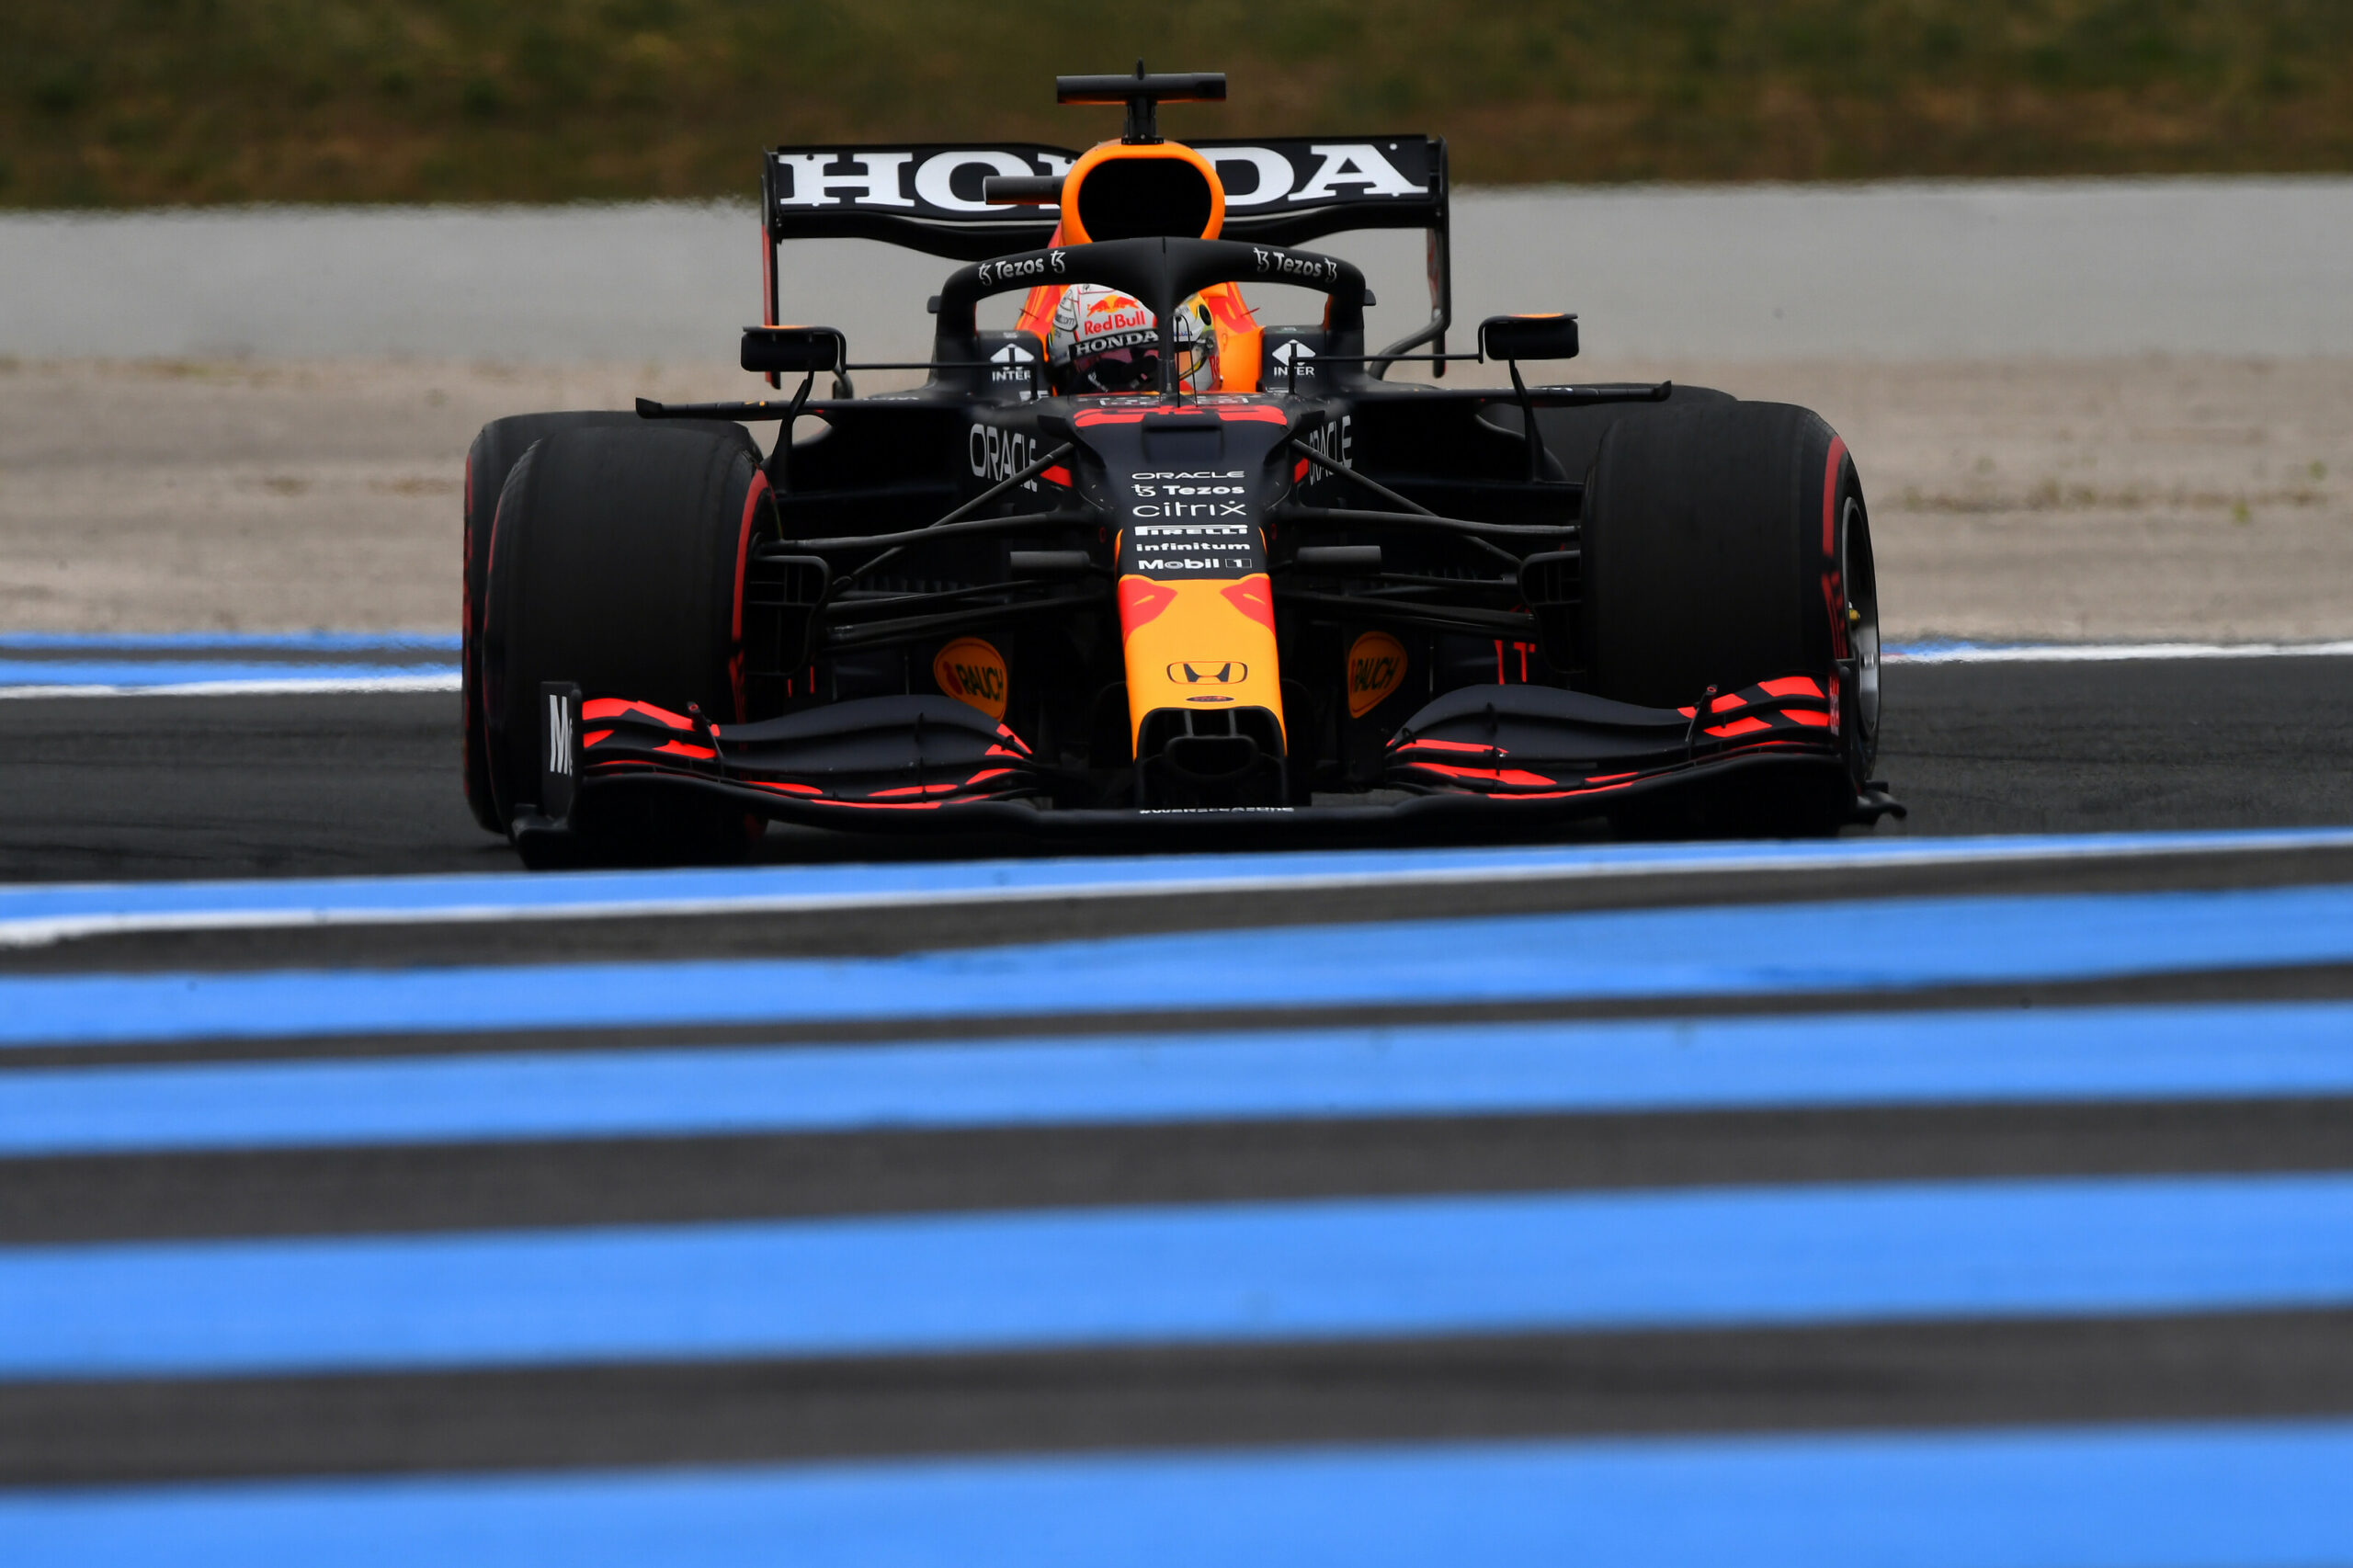 F1 - Max Verstappen frappe fort avant les qualifications au Castellet